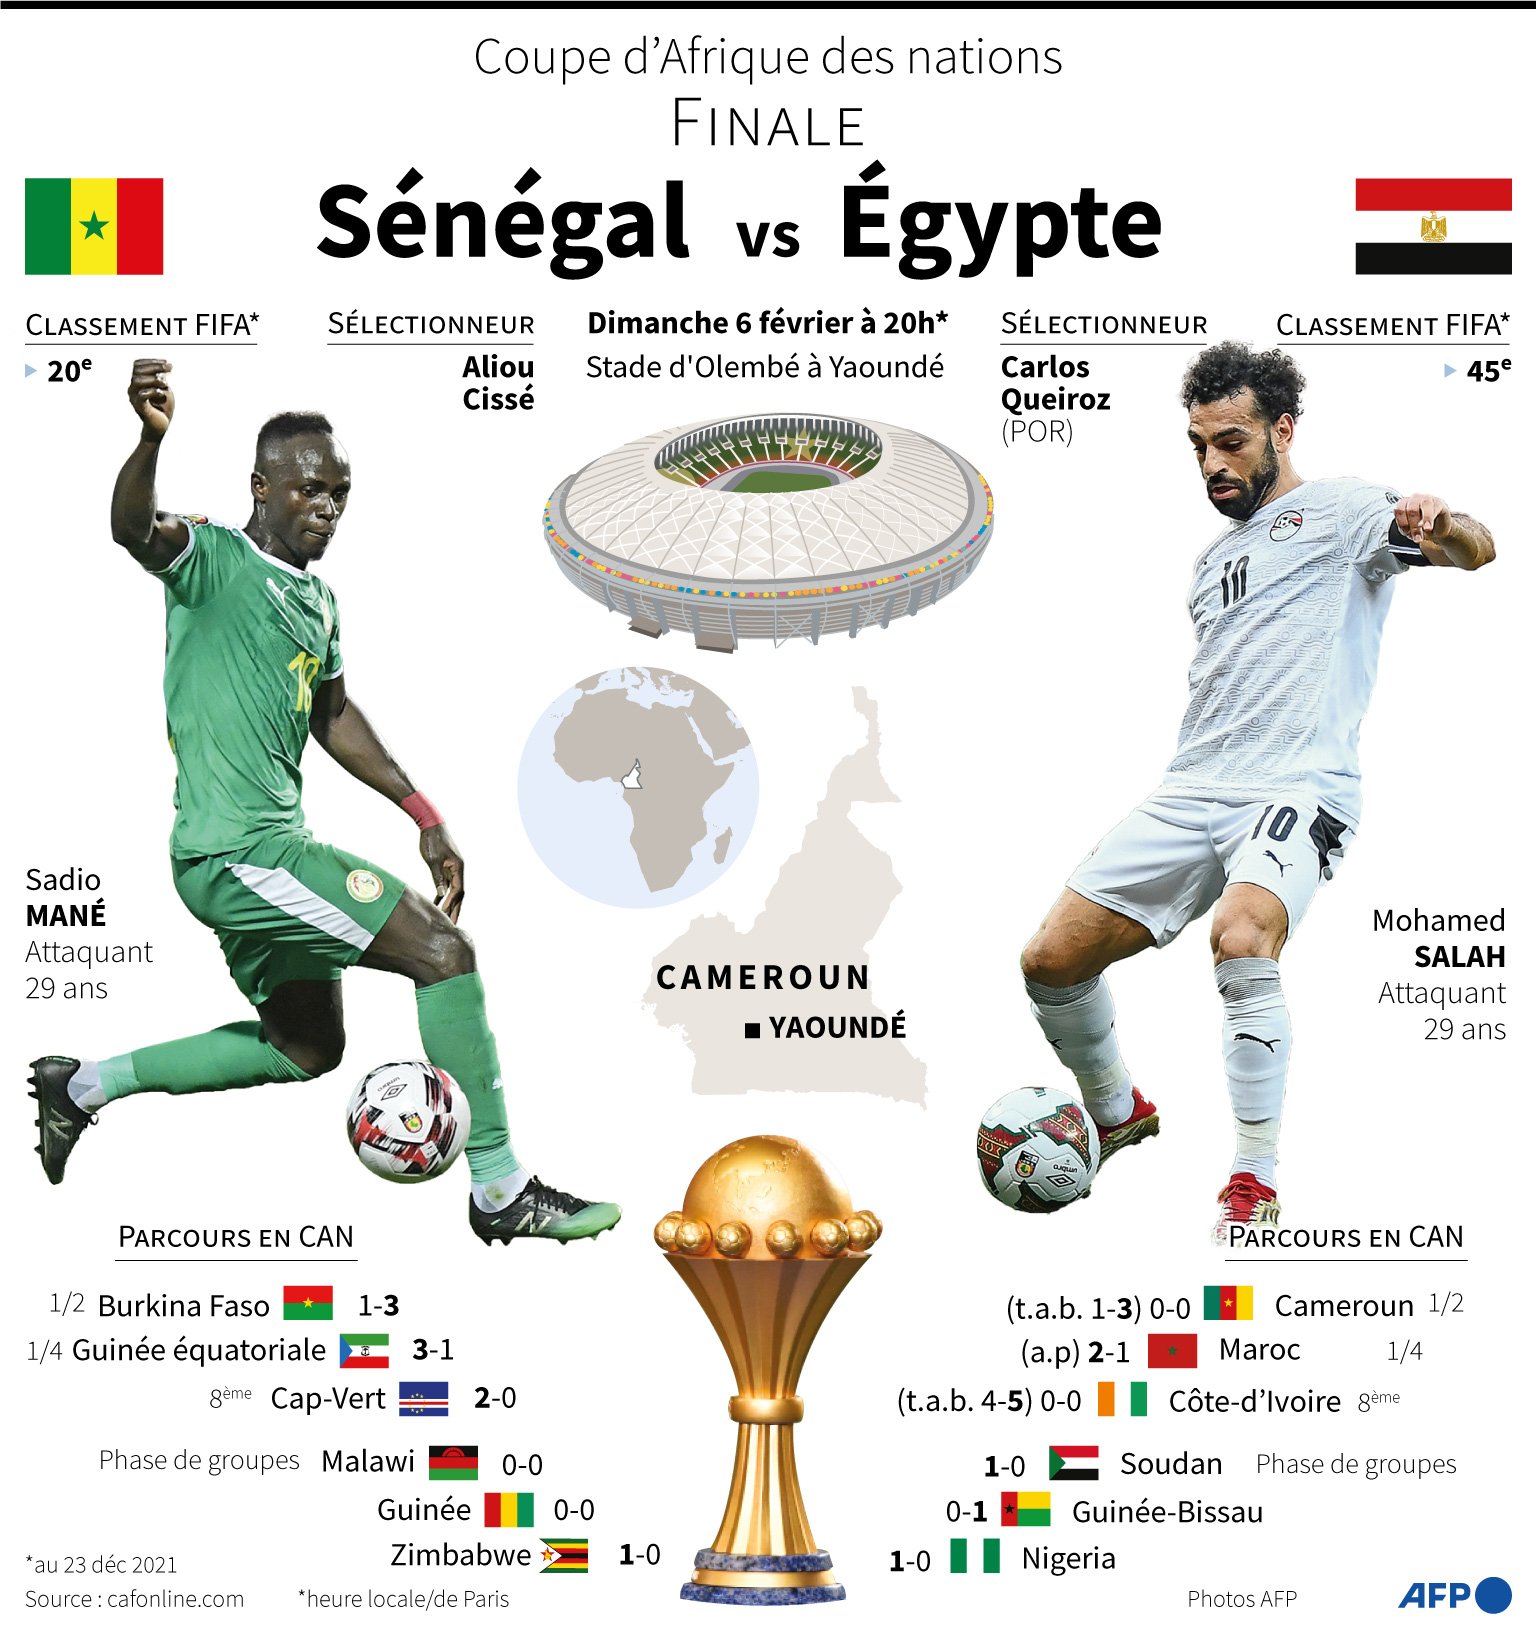 Présentation de la finale de la Coupe d'Afrique des Nations 2021, Sénégal vs Egypte le 6 février à Yaoundé au Cameroun